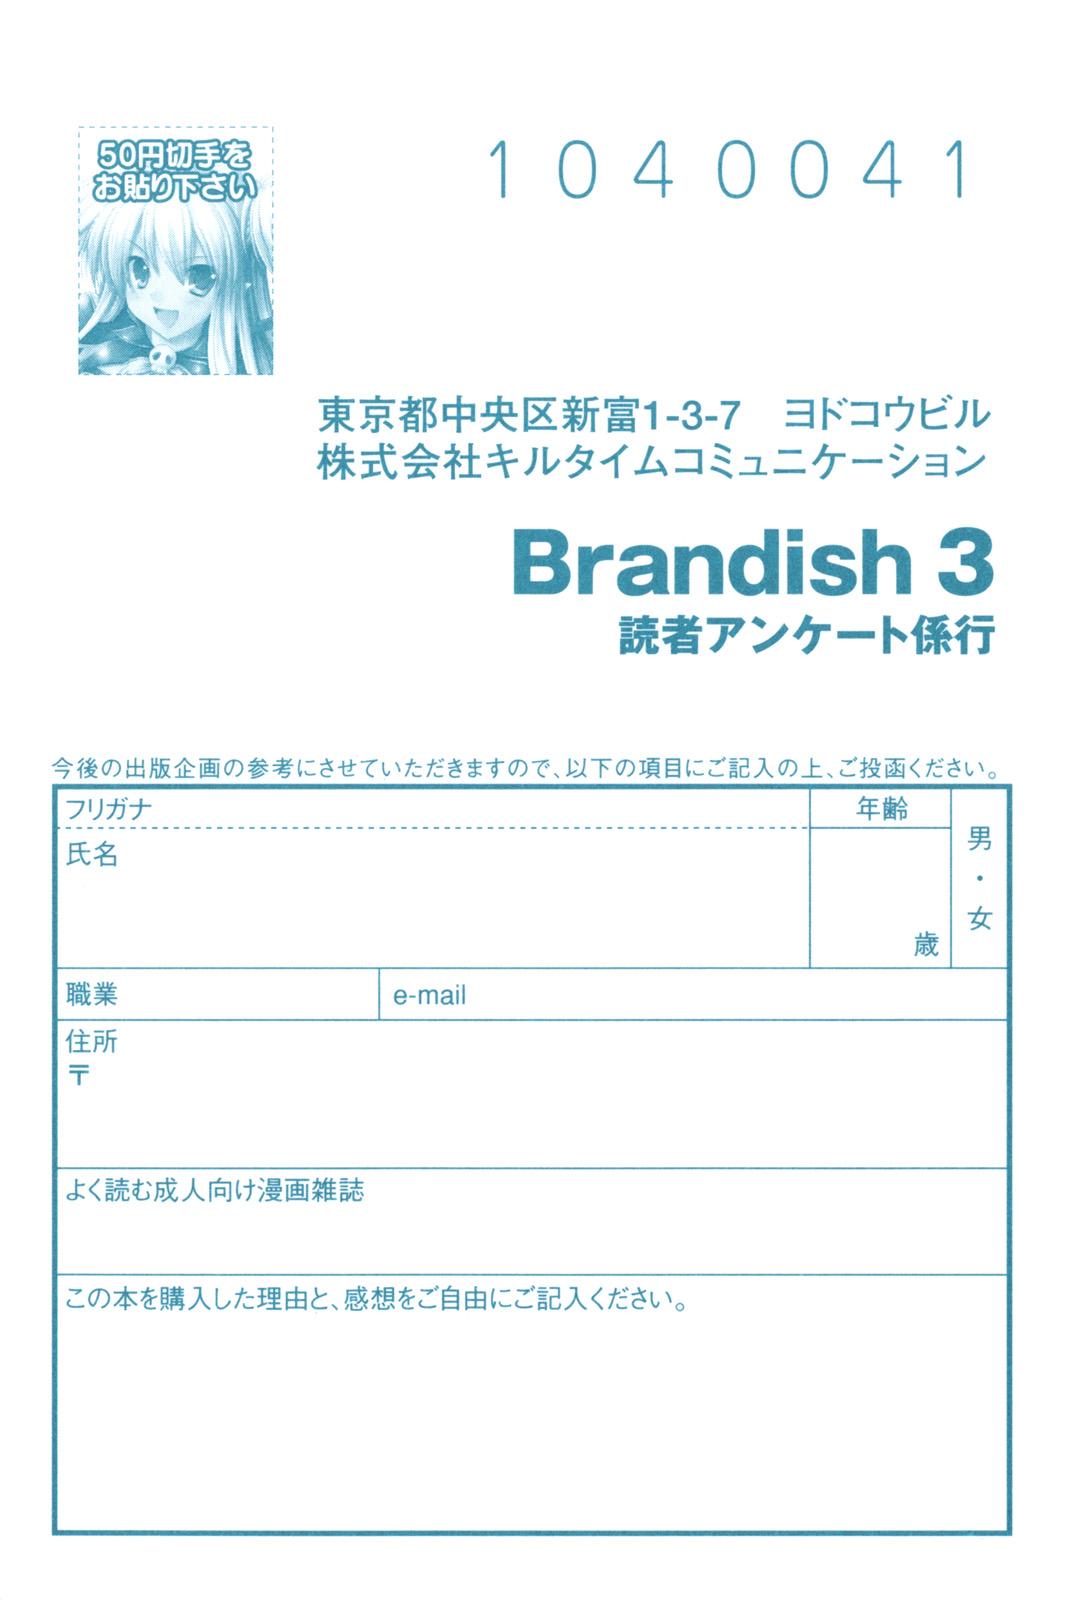 Brandish 3 181